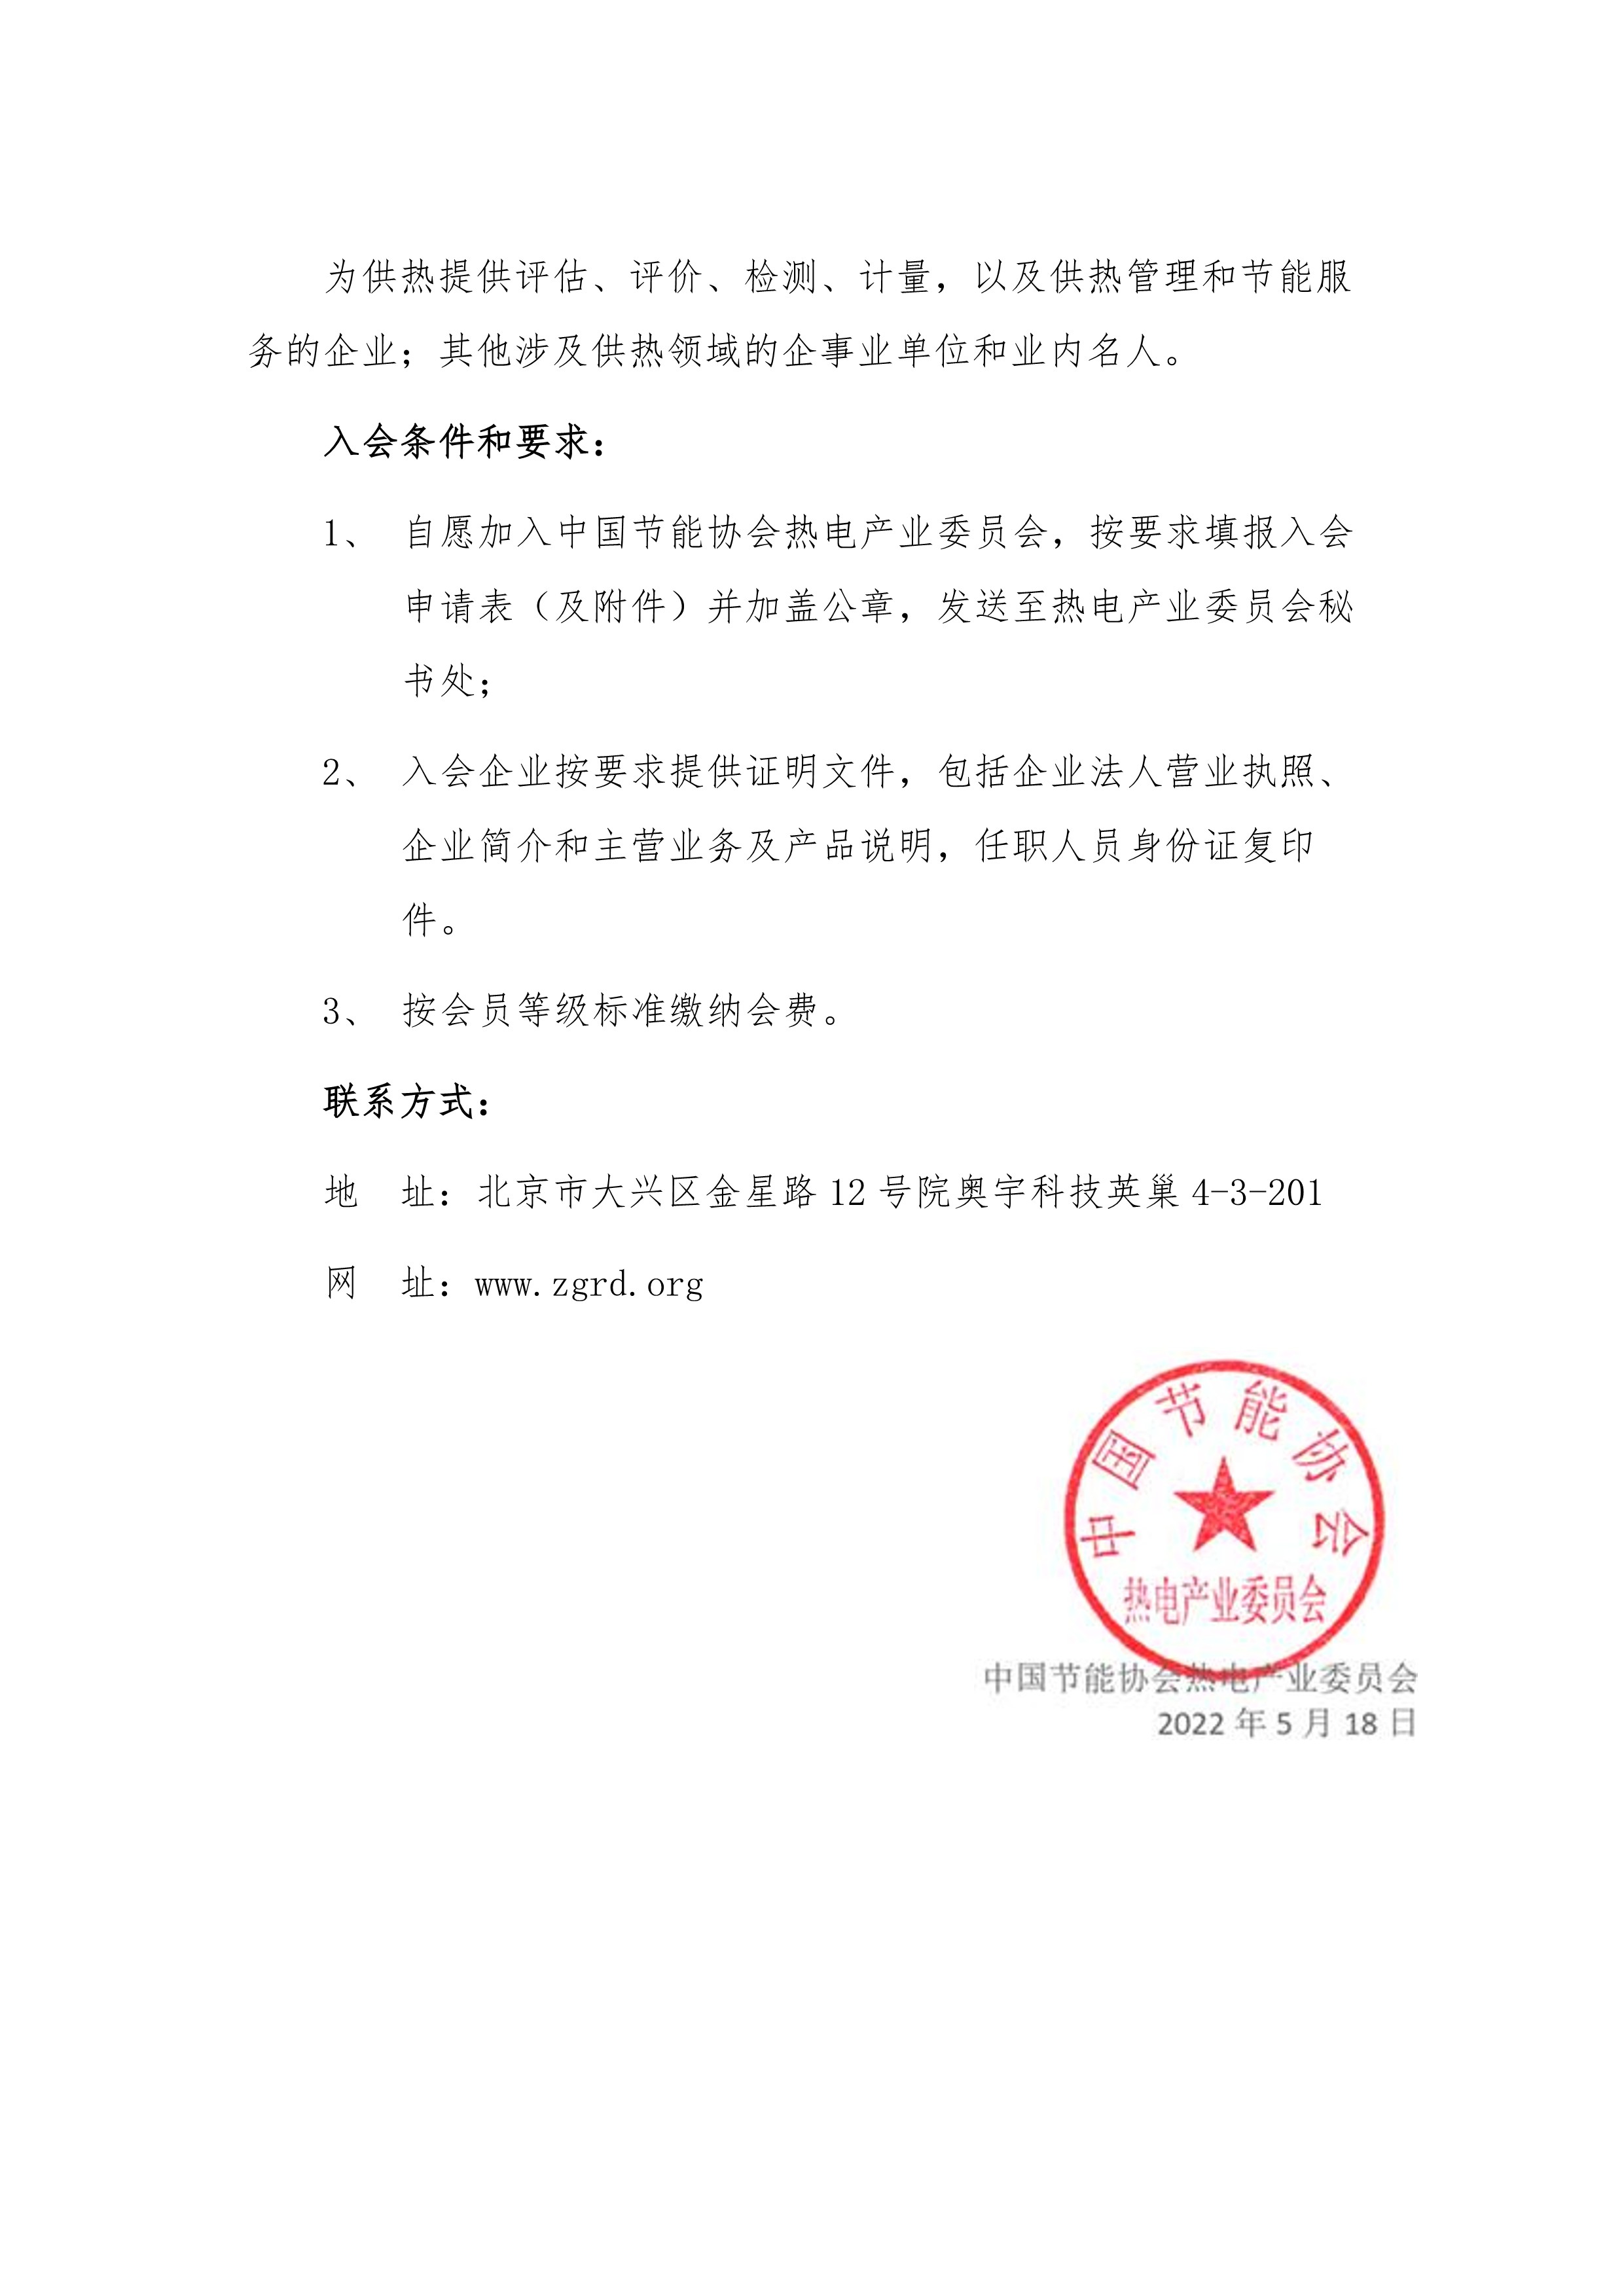 关于邀请加入中国节能协会热电产业委员会的函(2021.05.18)_2.jpg